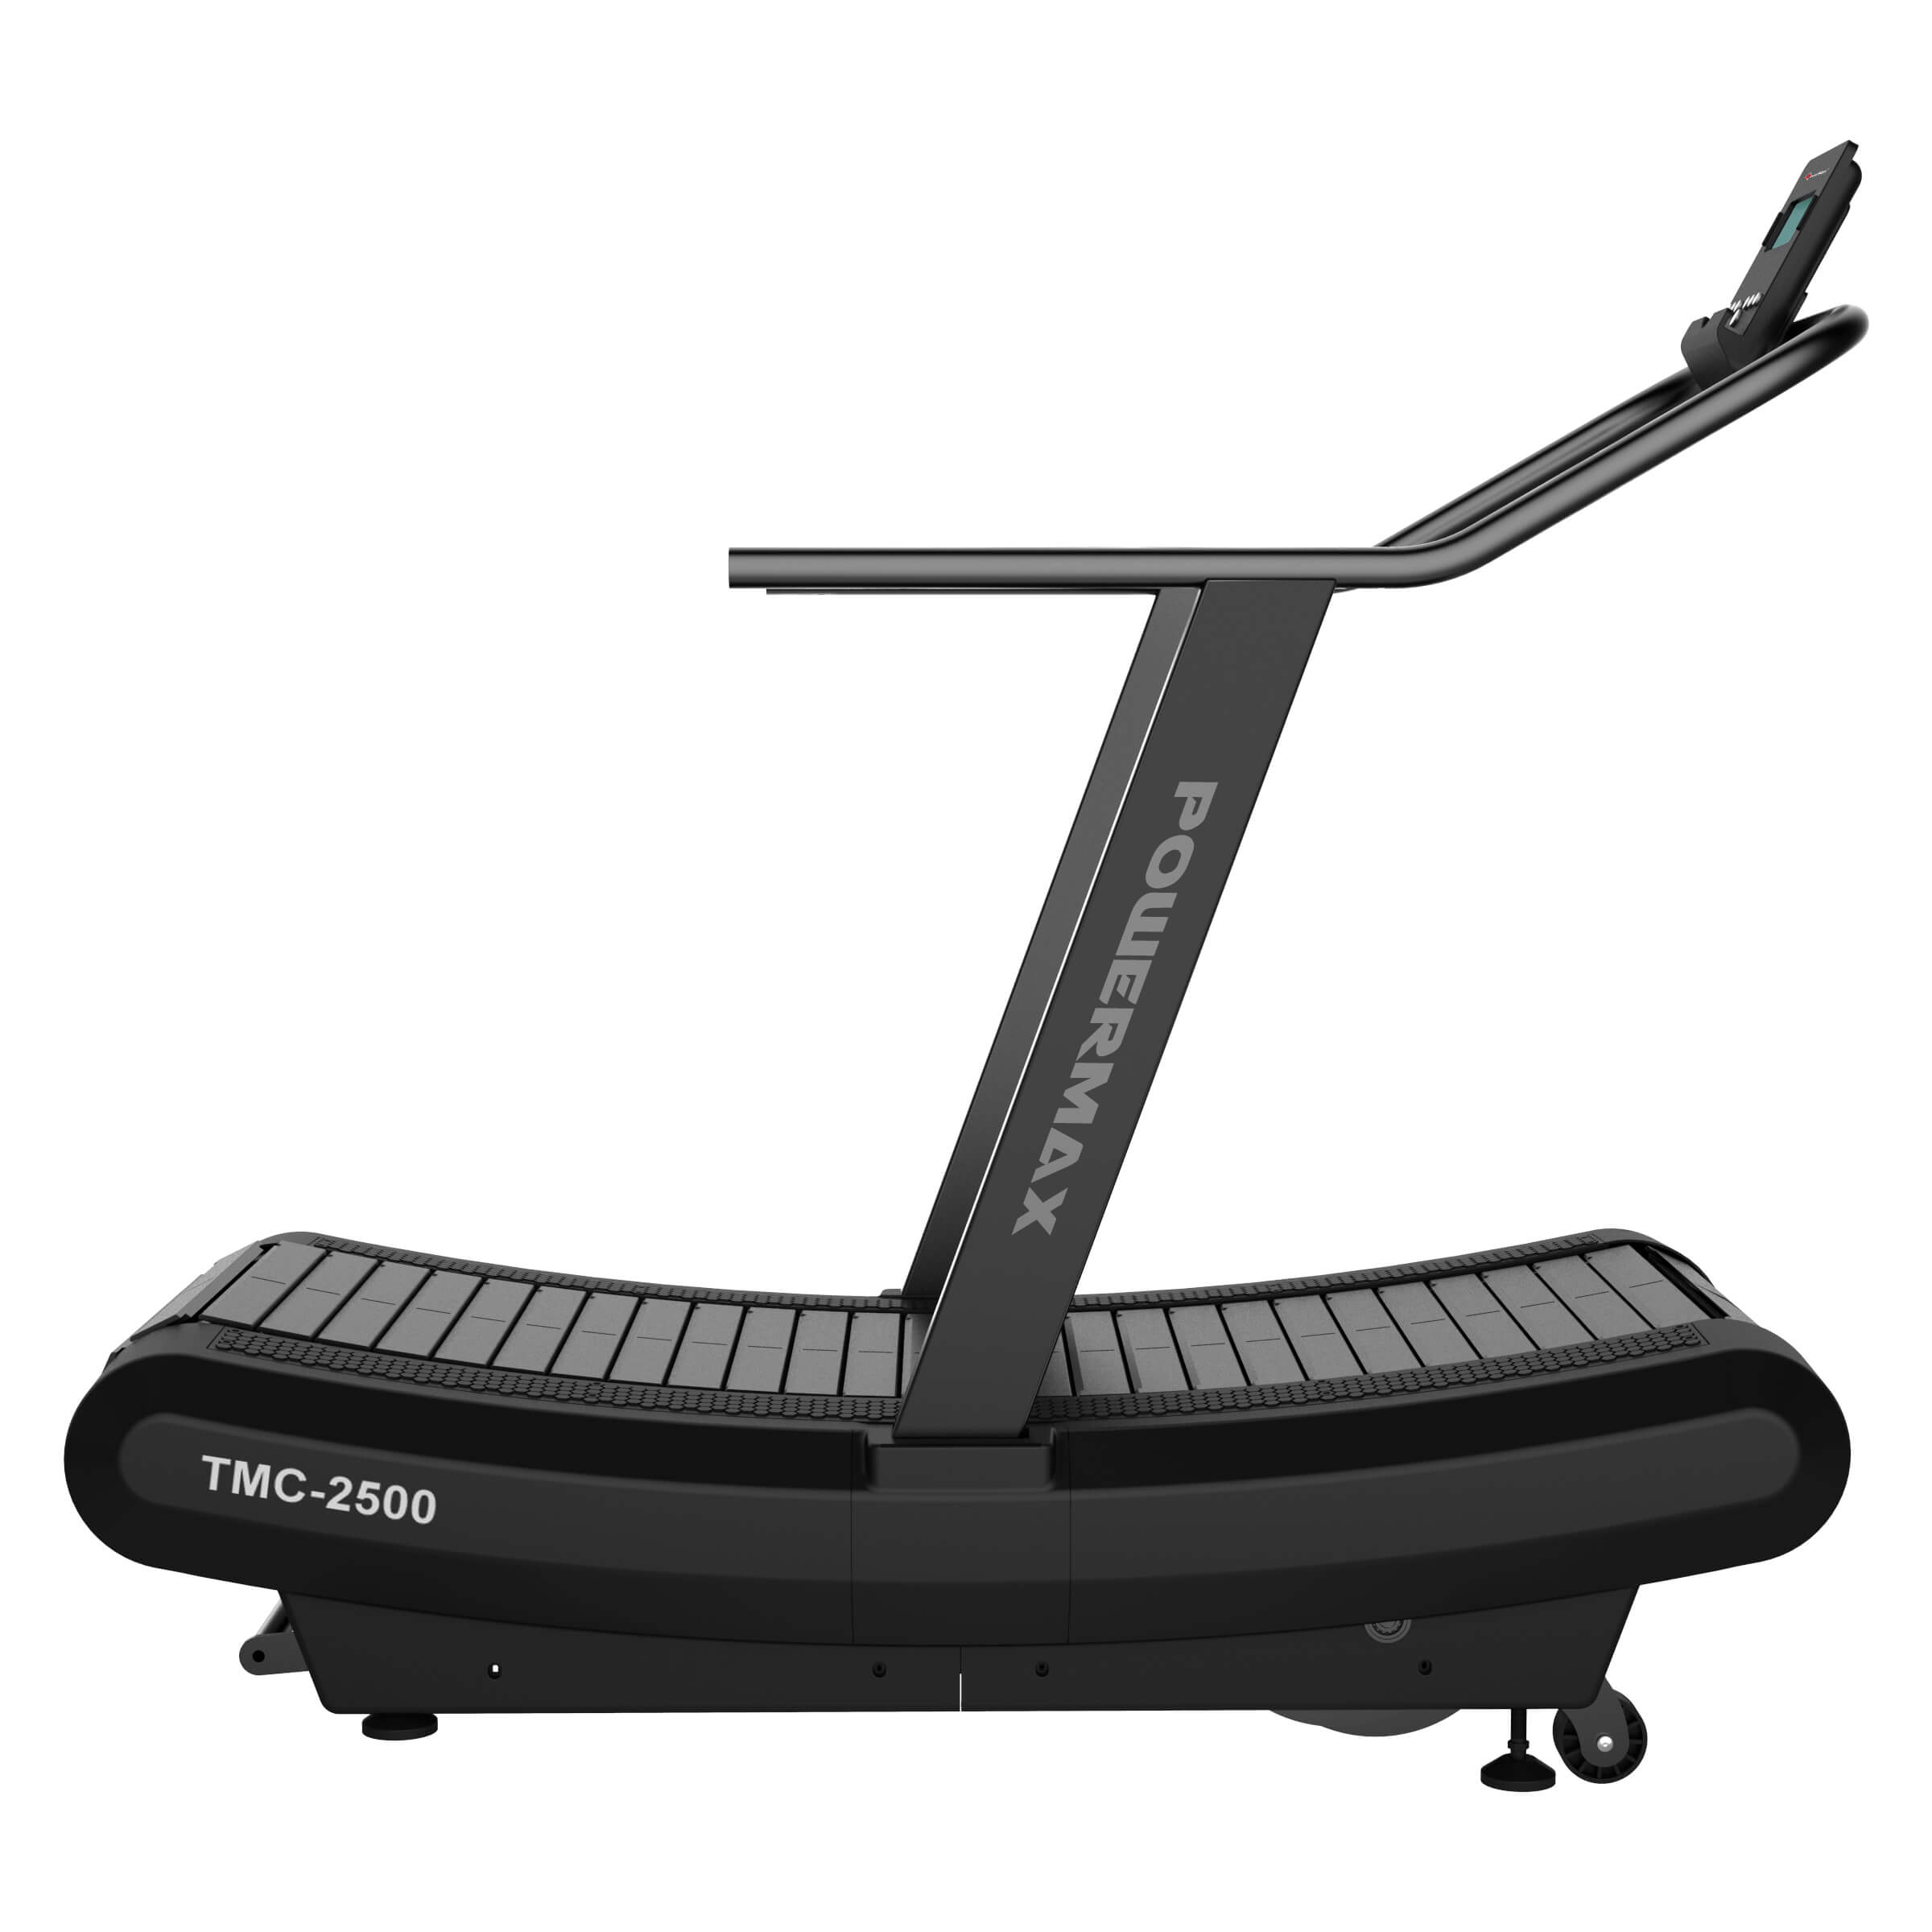 TMC-2500 Commercial Curve Treadmill